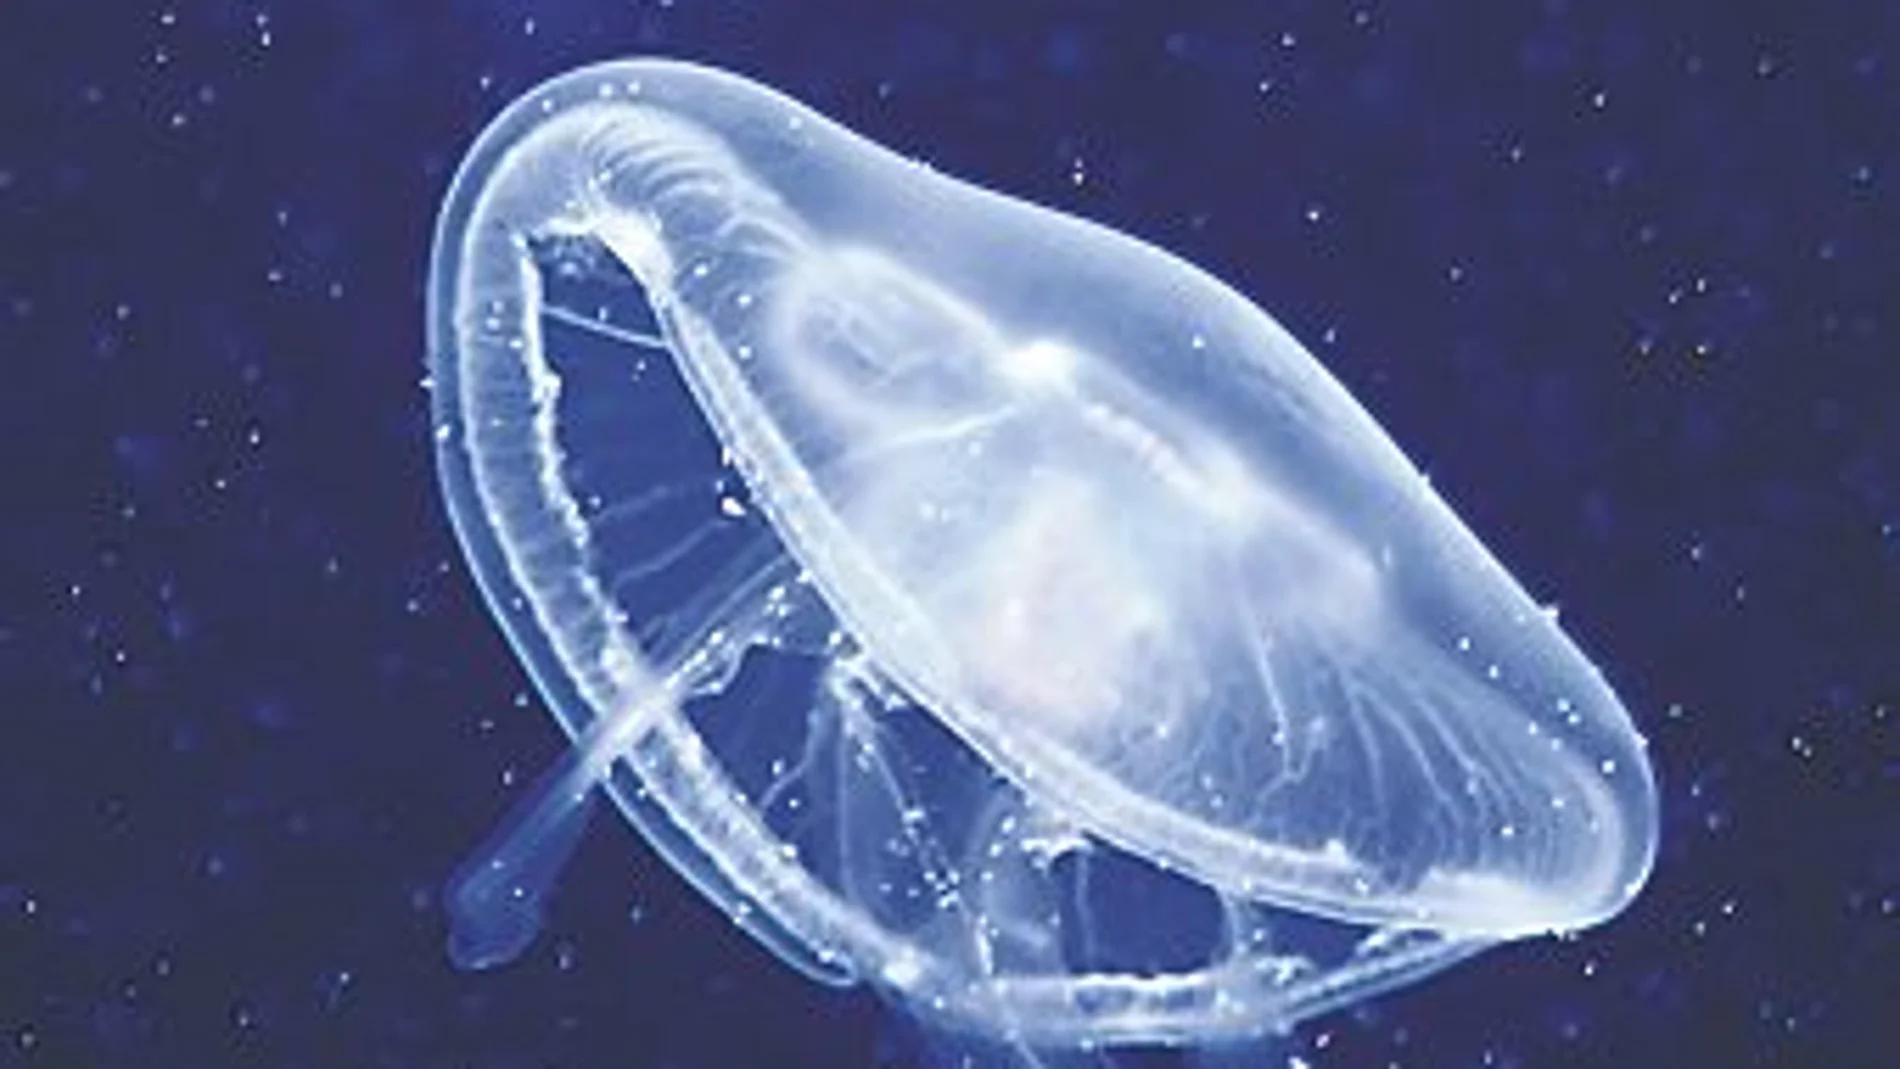 Los puertos estimulan la proliferación de medusas al convertirse en hábitat de pólipos